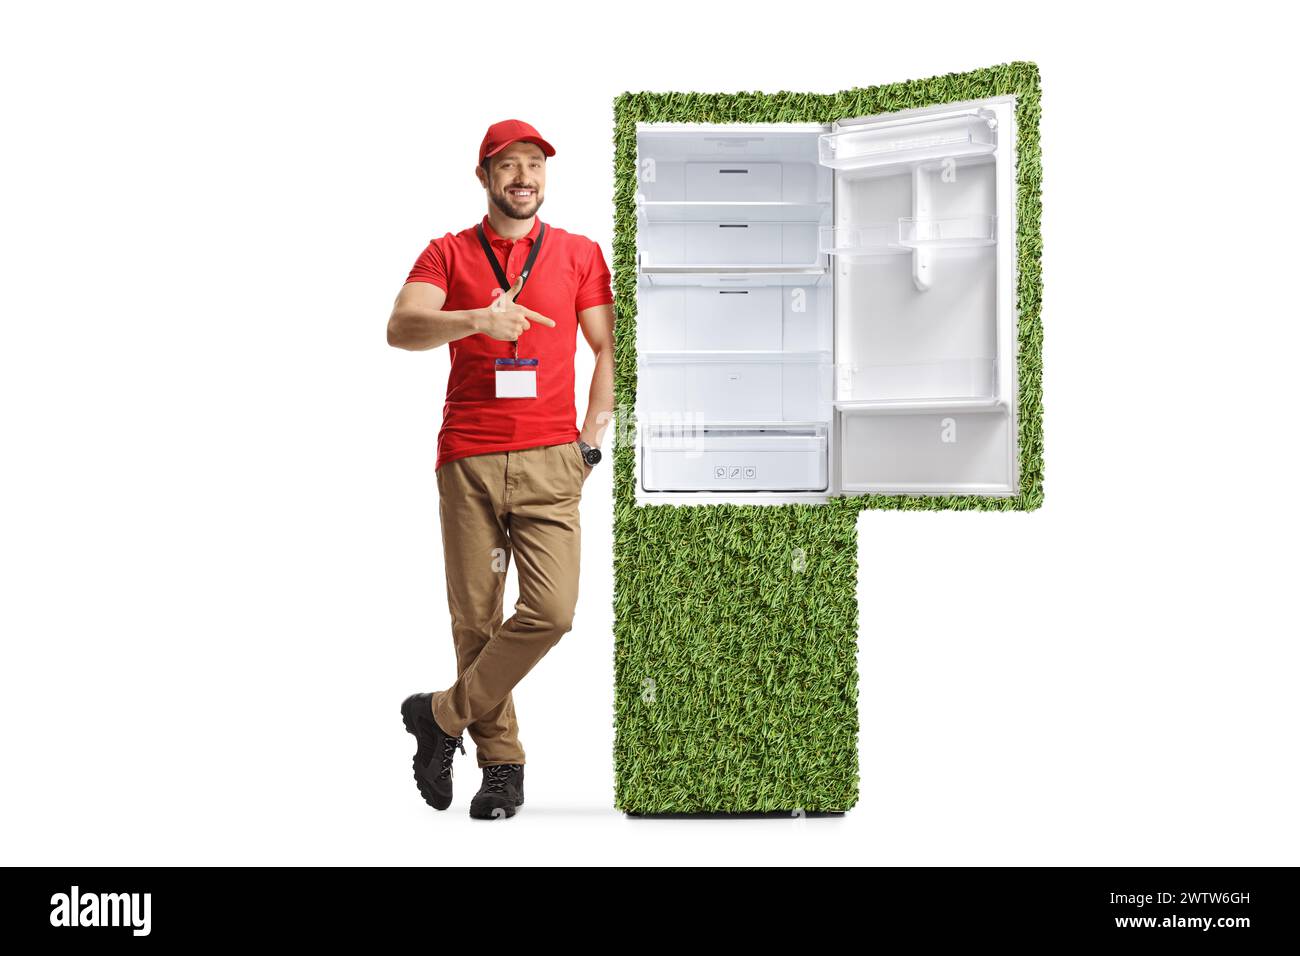 Der Assistent des Geräteschranks lehnt sich auf einen energieeffizienten Kühlschrank und zeigt isoliert auf weißem Hintergrund Stockfoto